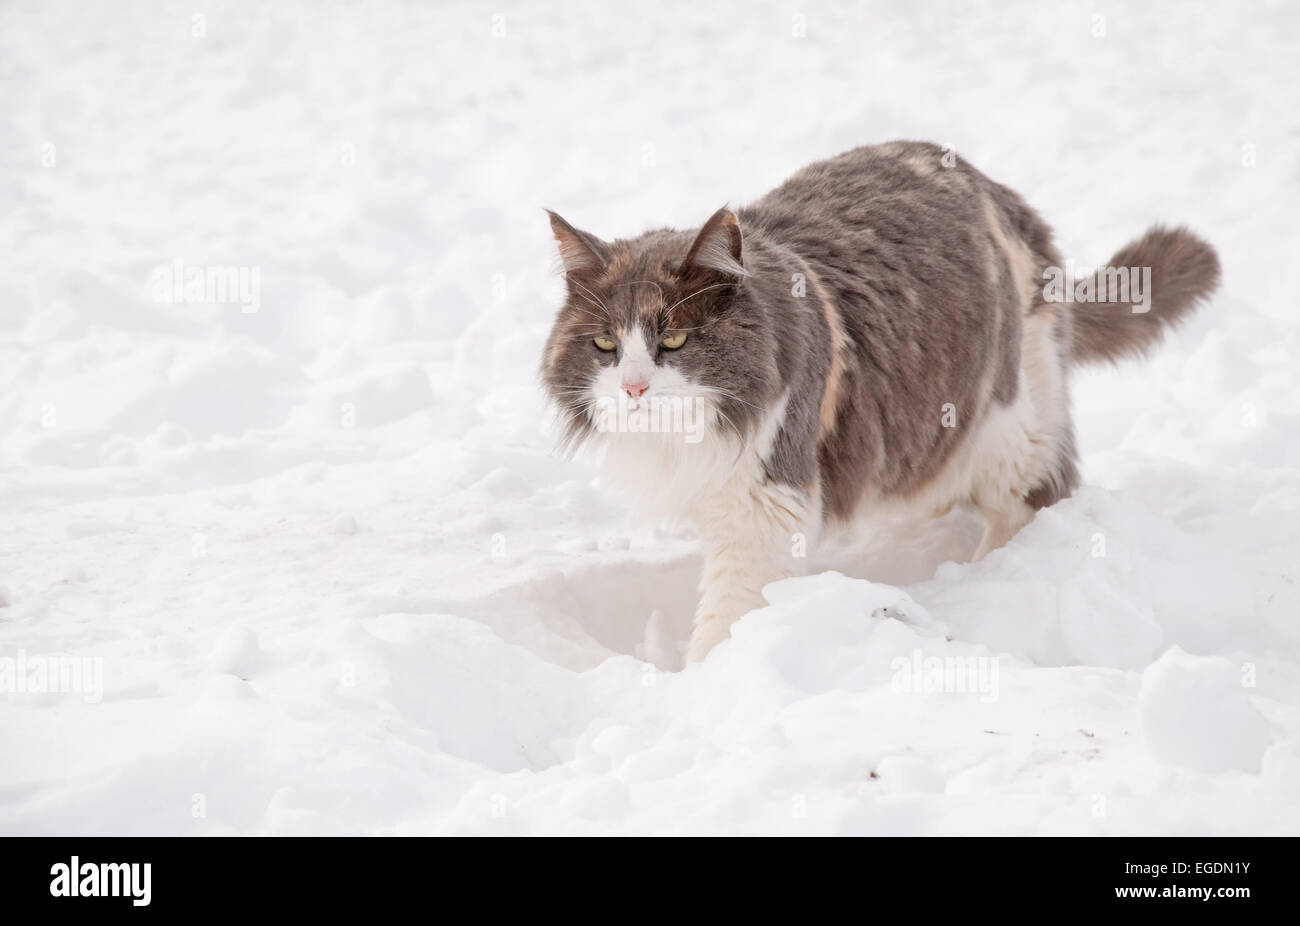 Diluito gatta calico a piedi nella neve profonda su un luminoso, fredda giornata invernale Foto Stock